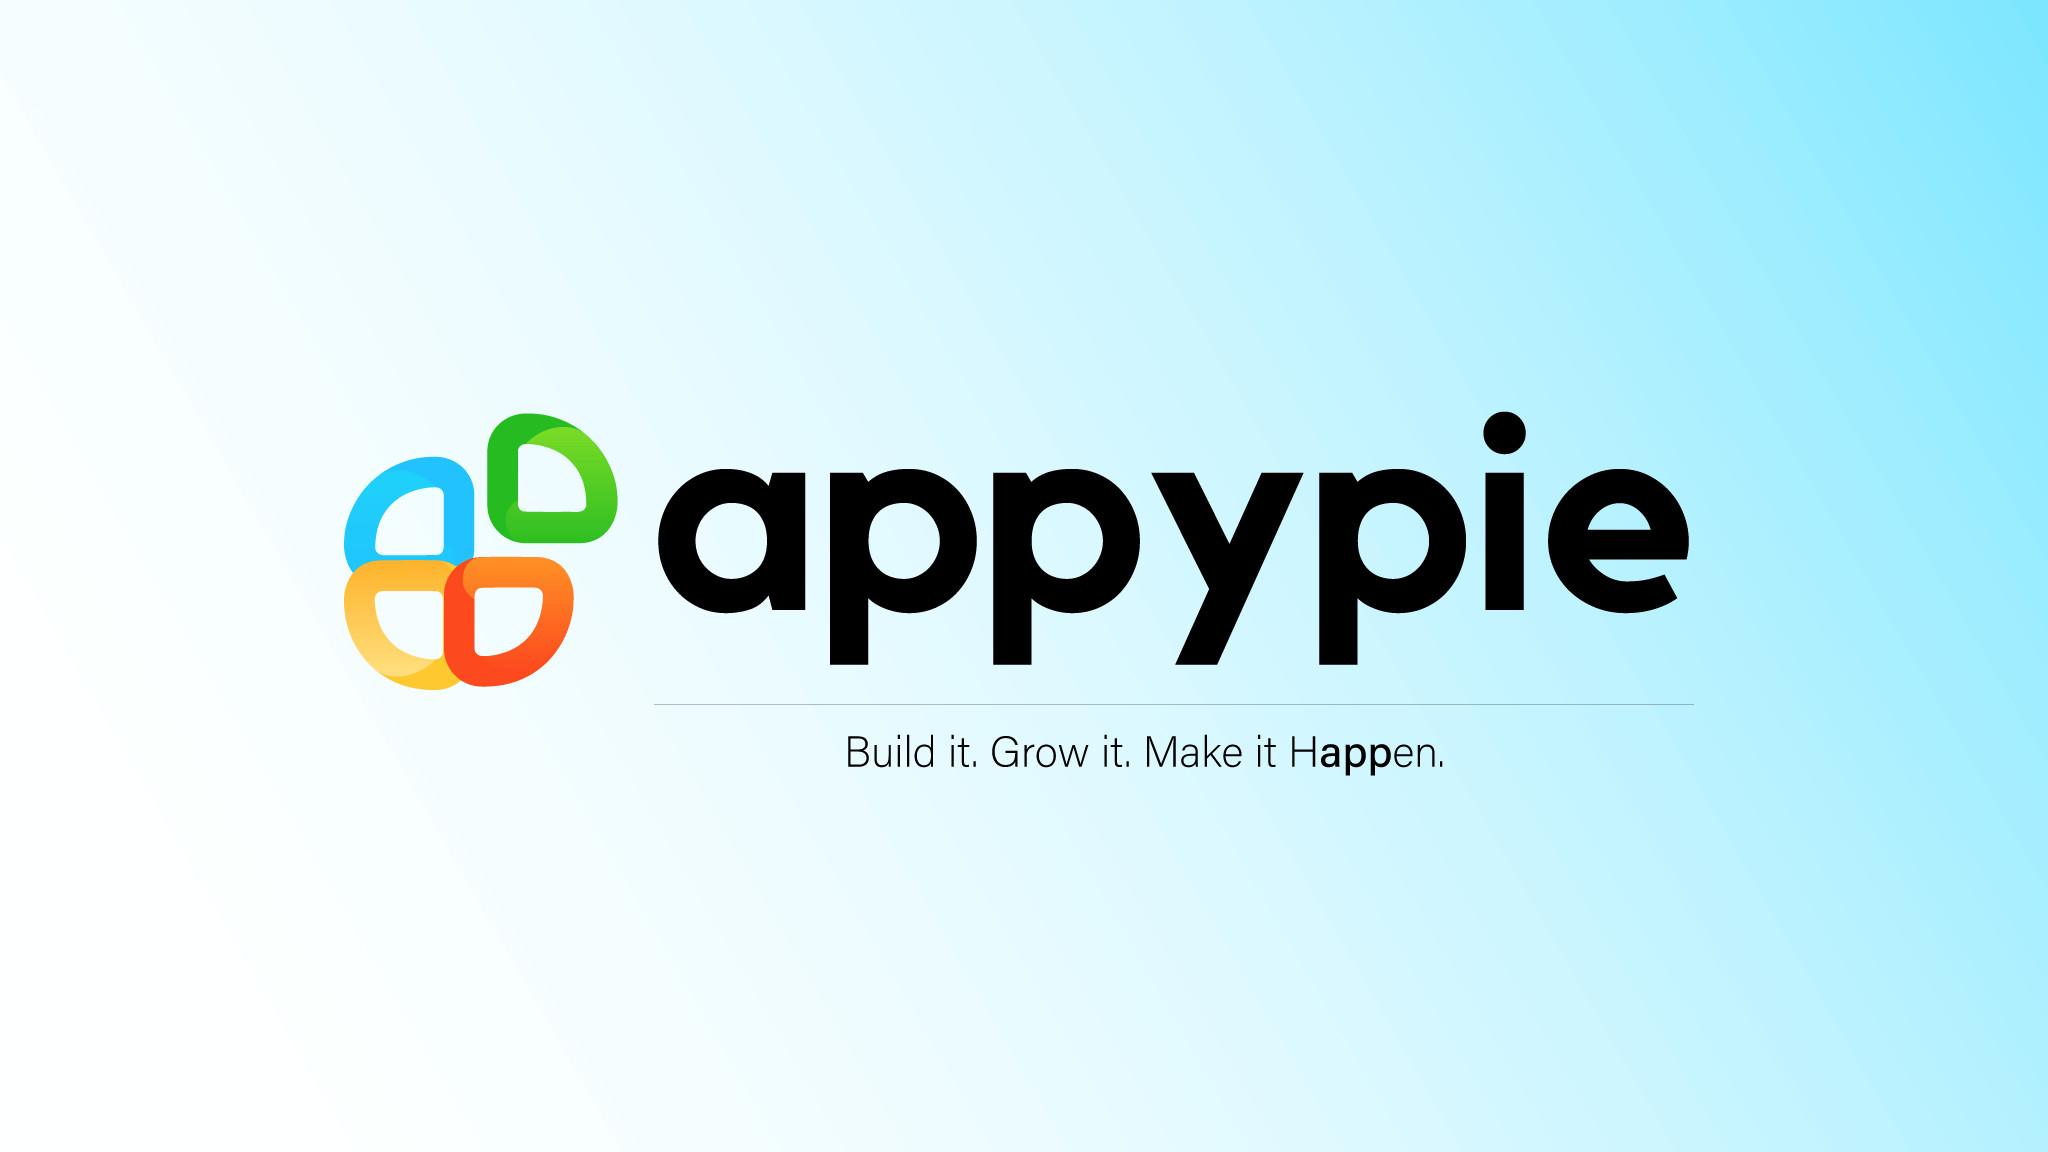 Appypie